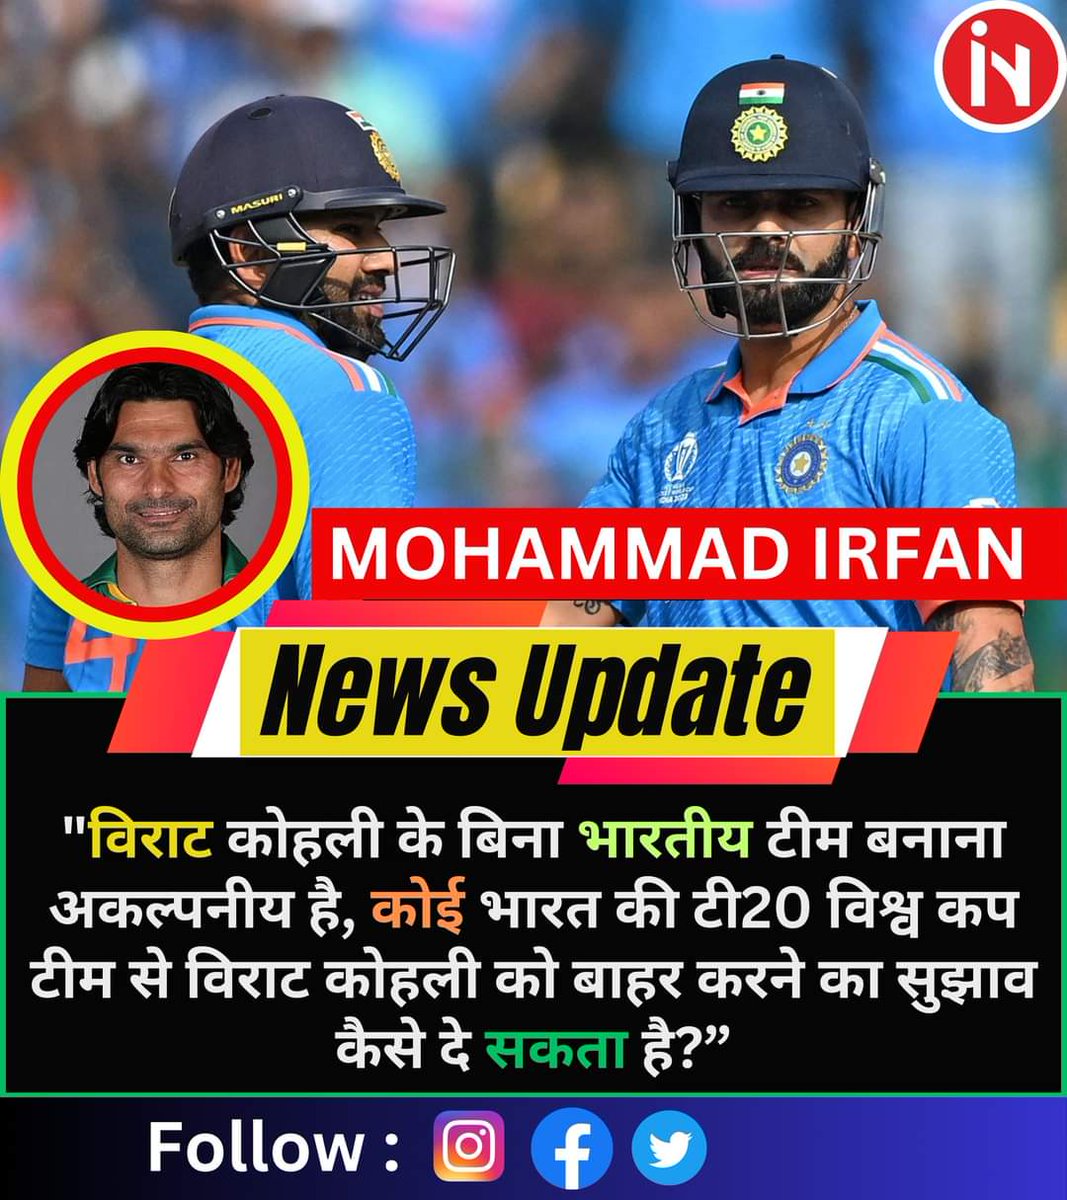 मोहम्मद इरफ़ान, 'विराट कोहली के बिना भारतीय टीम बनाना अकल्पनीय है, कोई भारत की टी20 विश्व कप टीम से विराट कोहली को बाहर करने का सुझाव कैसे दे सकता है?'
.
.
#mohhamadirfan #viratkohli #T20WorldCup #DailyCricketNews #rcb #fbpost #fbvrial #fbcricketnews #cricketfans #SportsUpdates